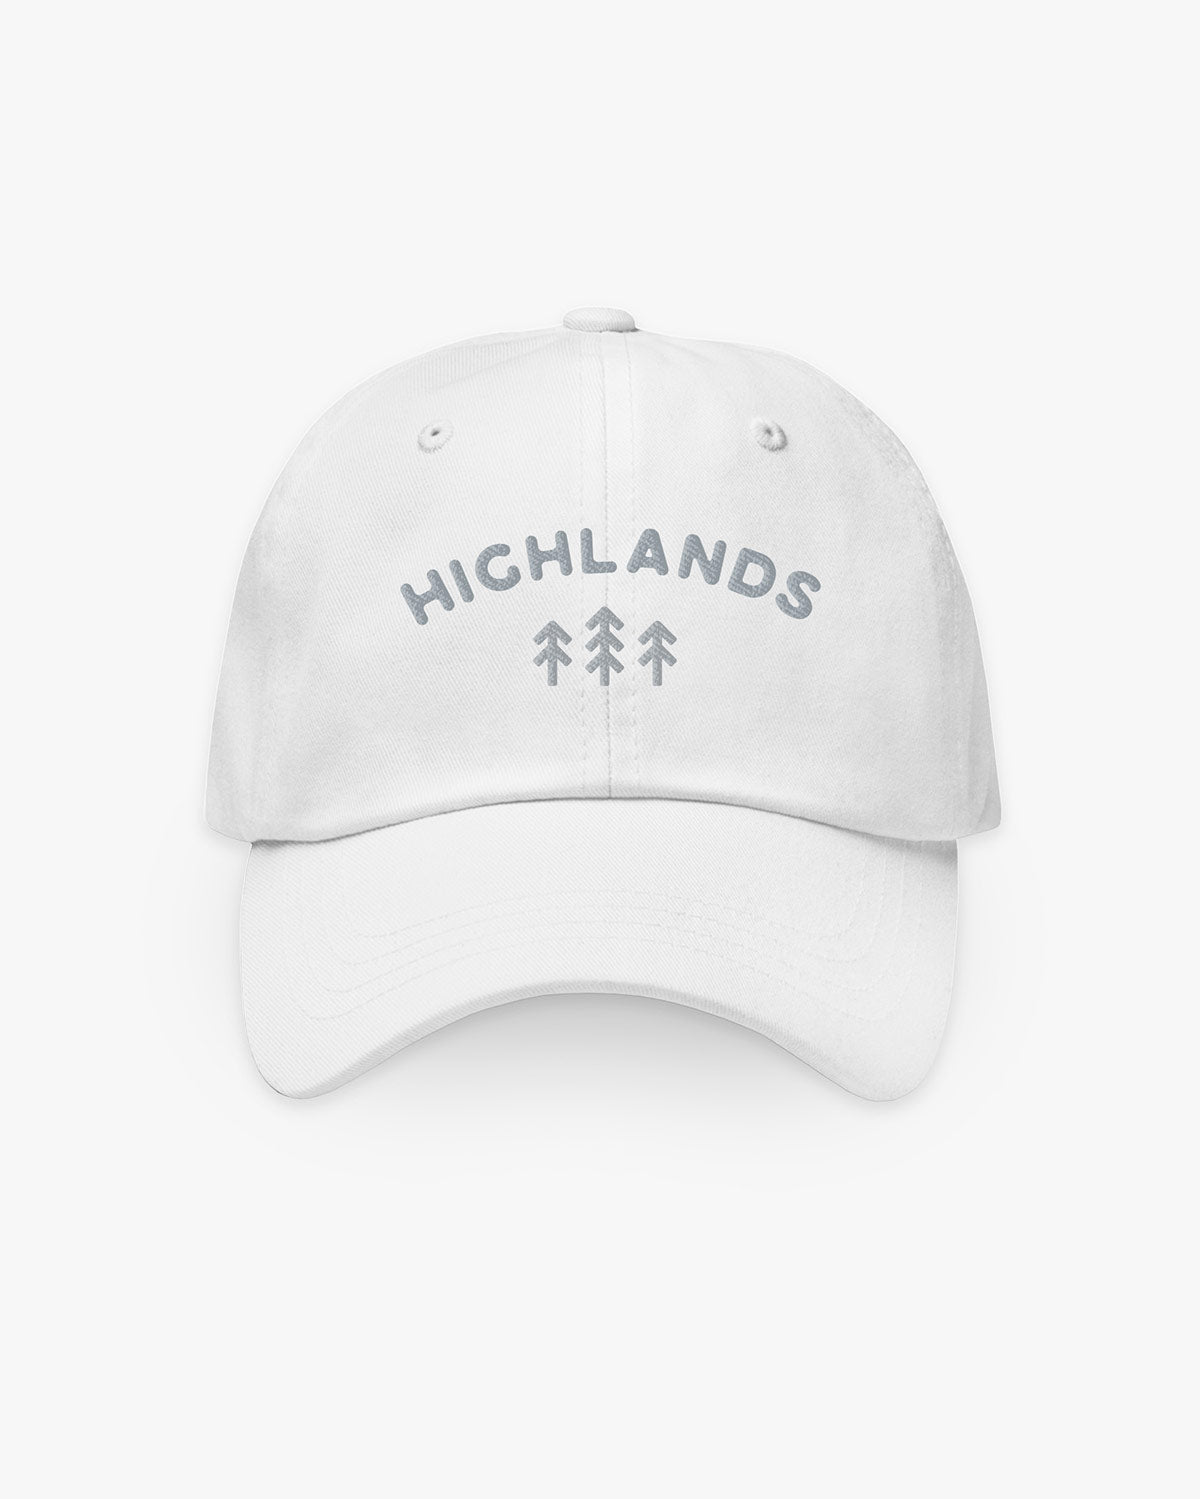 Trees - Highlands - Hat